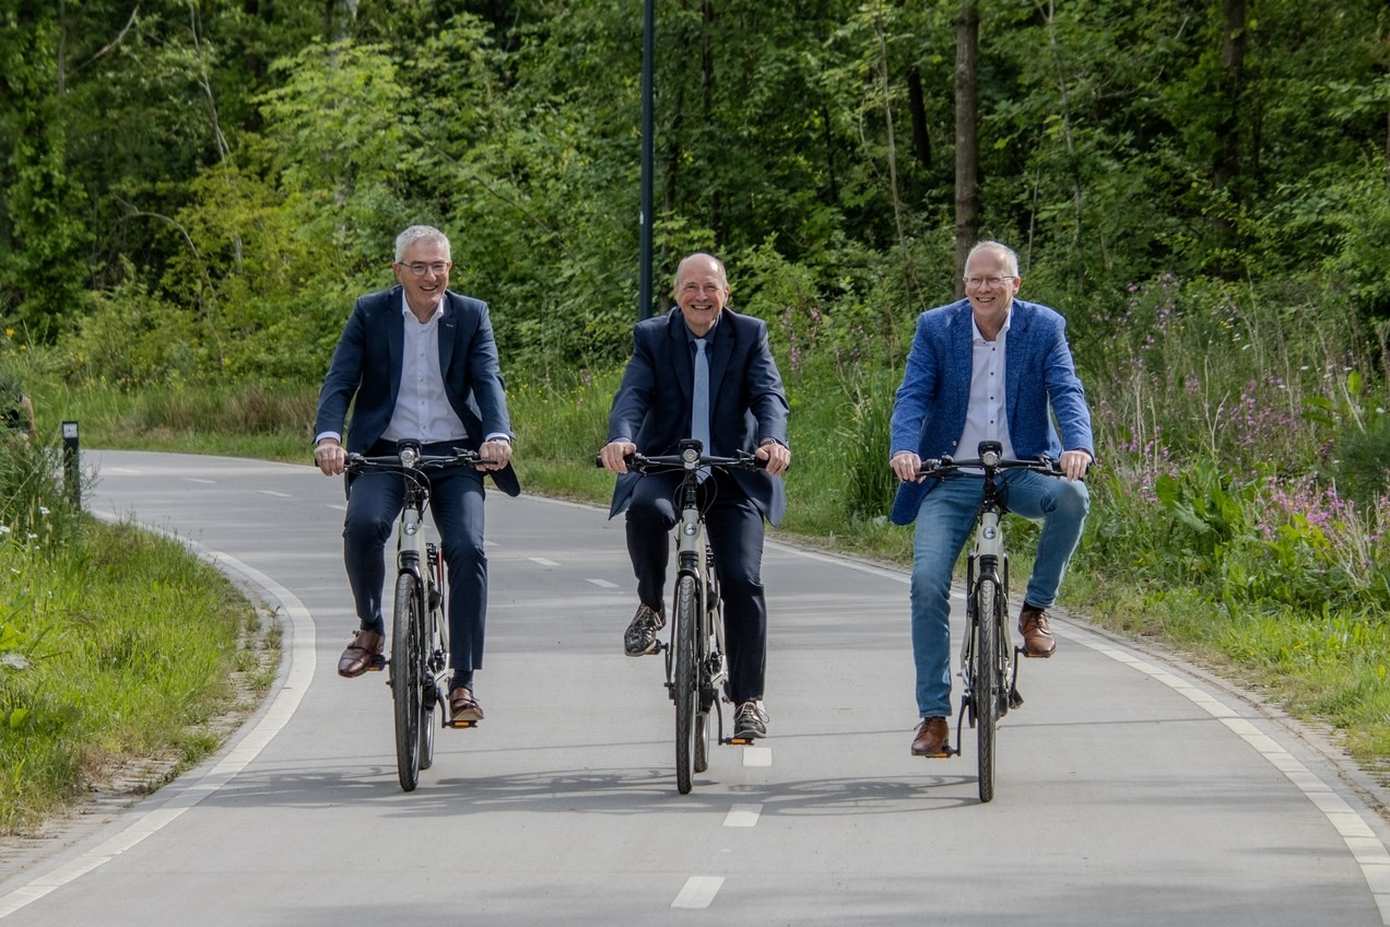 Vlot en veilig op de fiets naar werk of school via doorfietsroute Assen-Groningen: fietspad bij Assen nu klaar en in gebruik